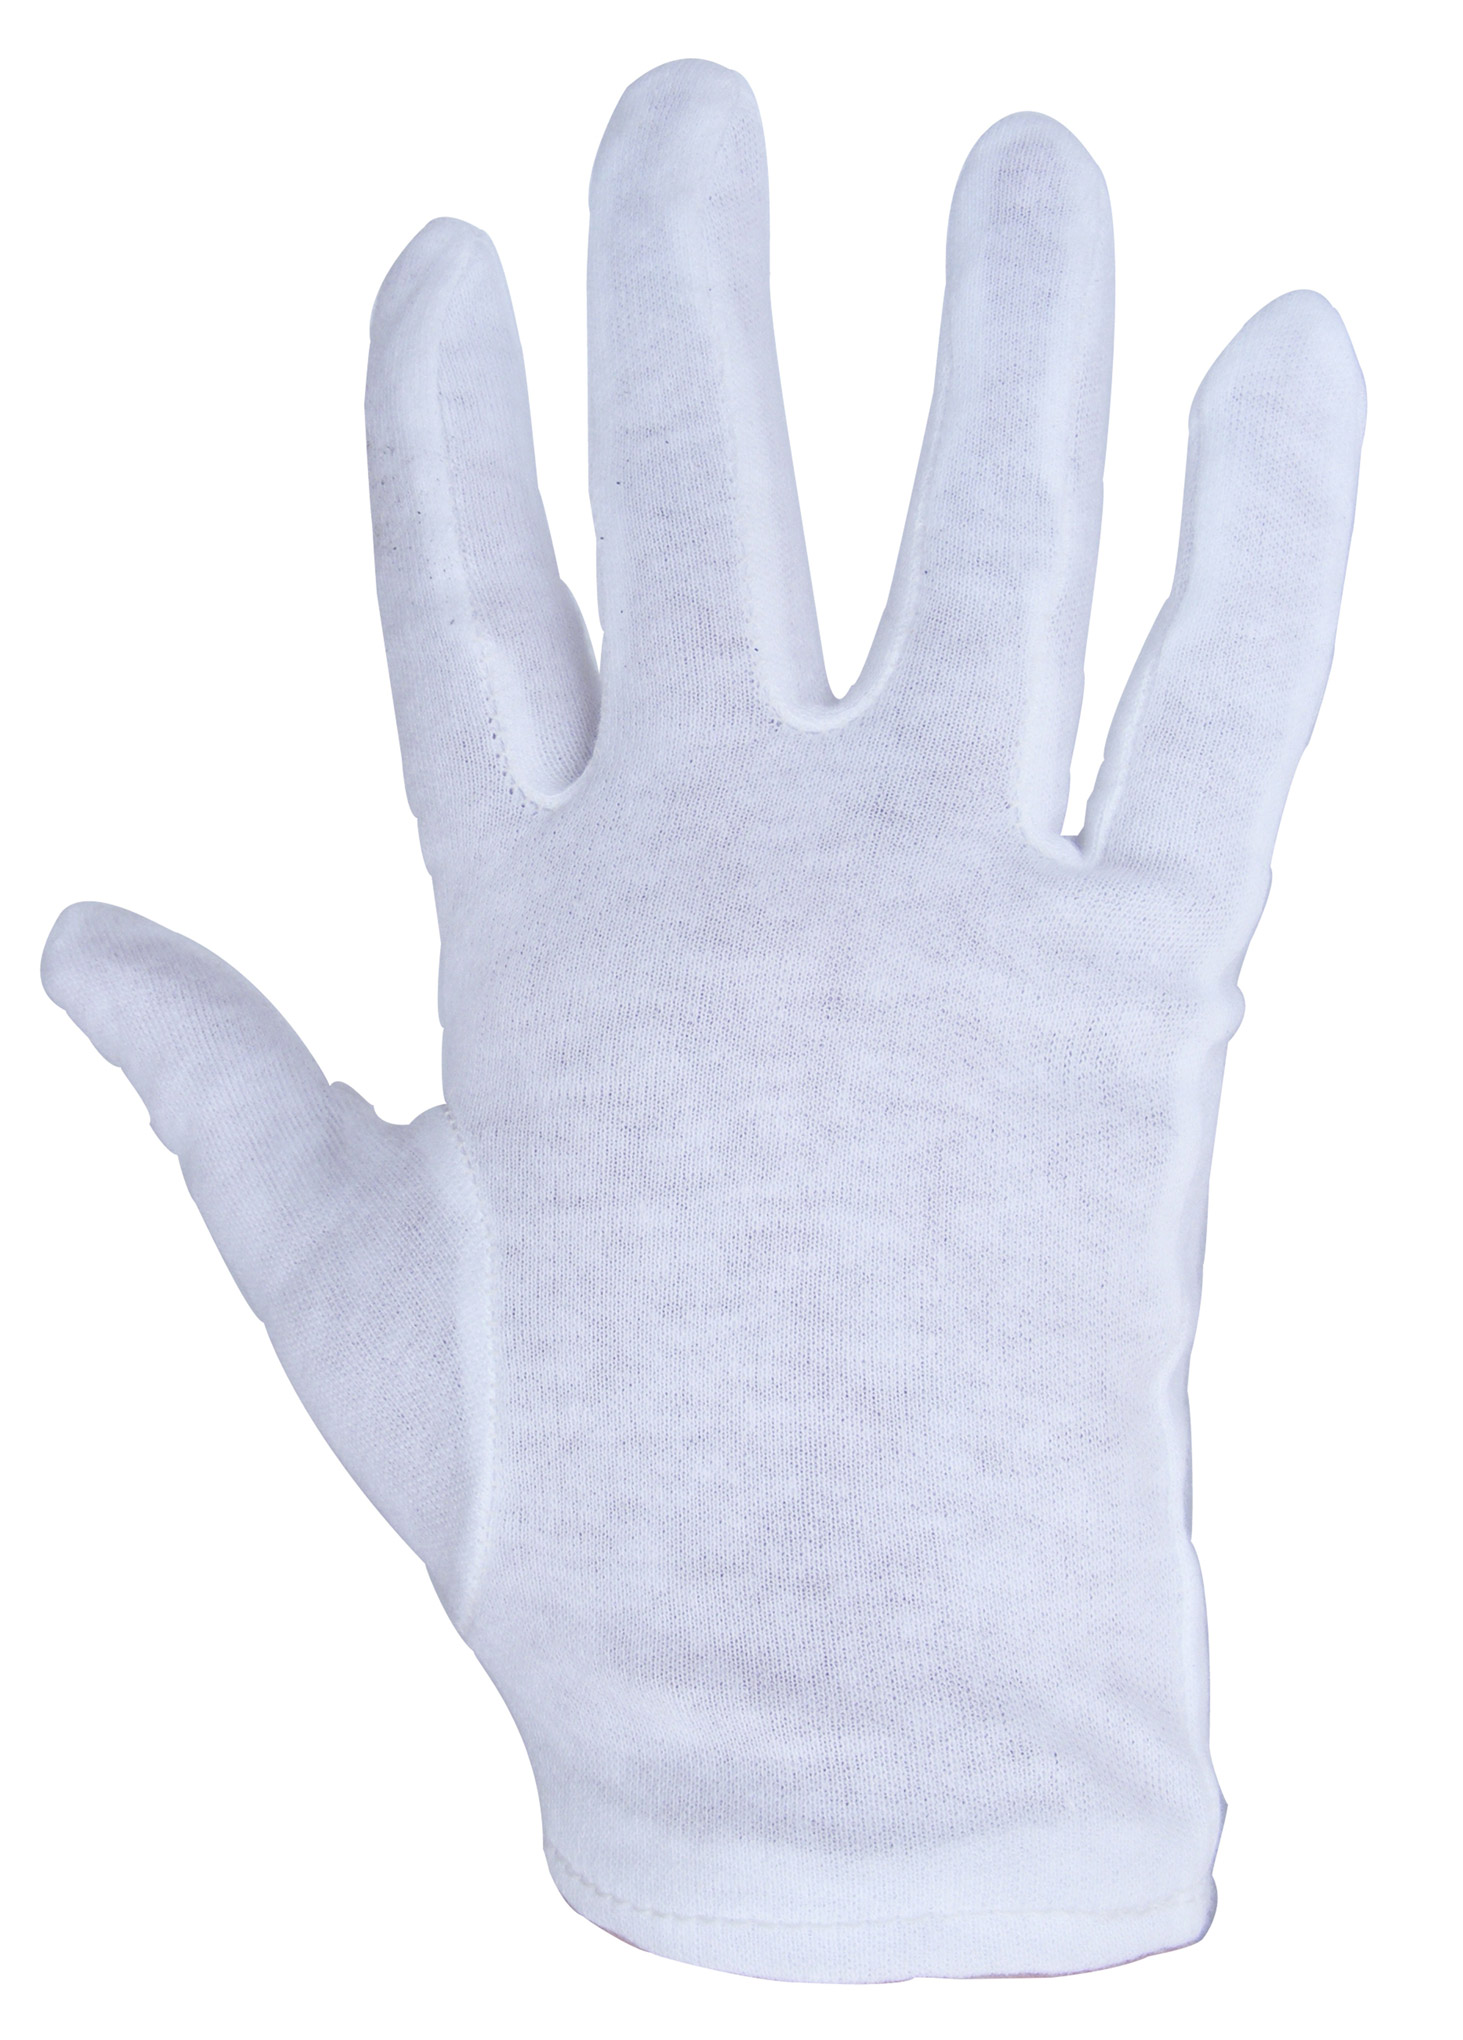 guantes de algodon talla m 20 cm varios colores fy 2551.jpg